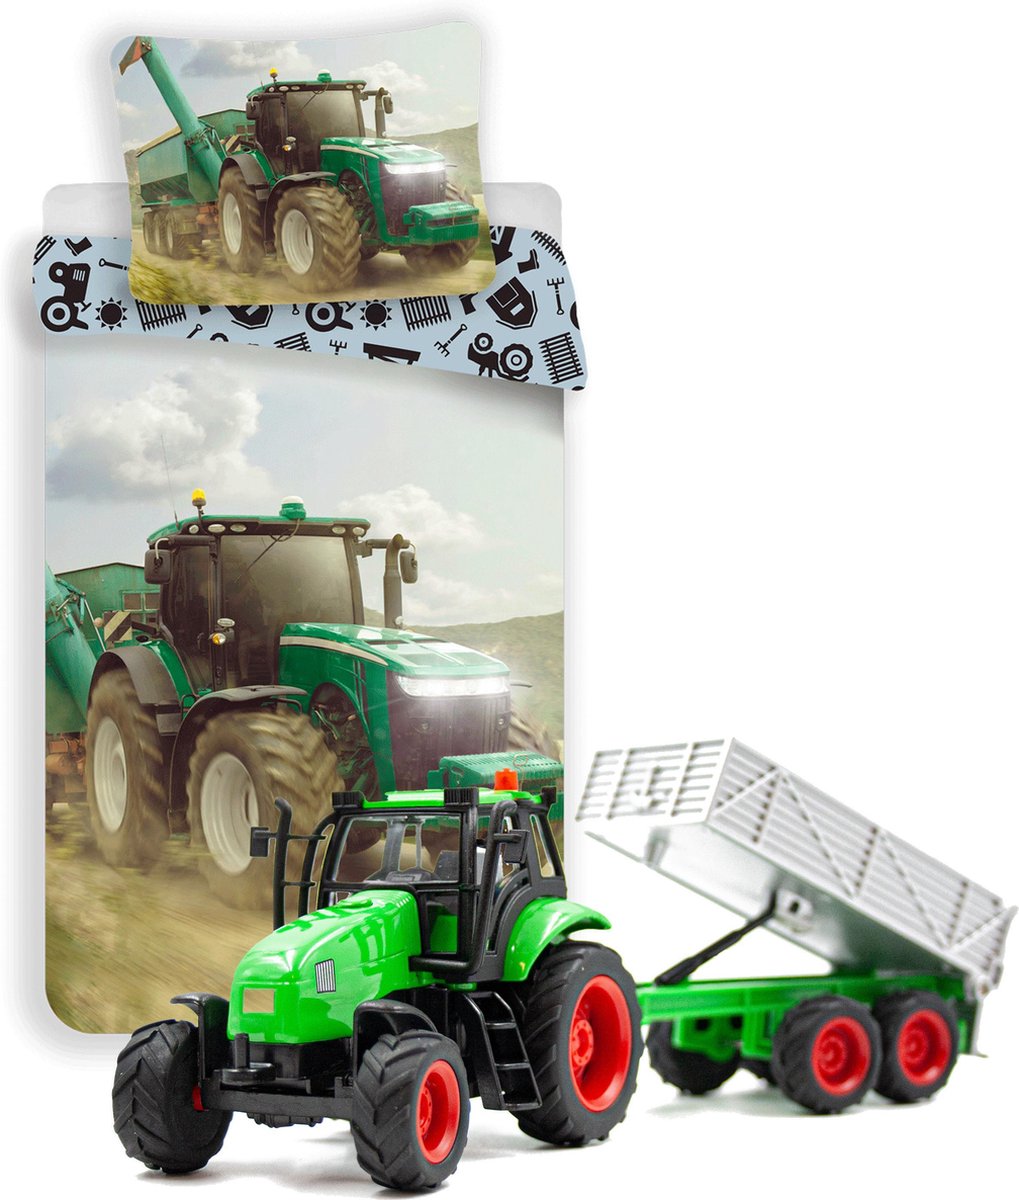 Dekbedovertrek groene Tractor - Eenpersoons - 140 x 200 cm - katoen- Boerderij dekbed- incl. Tractor speelset met Kipper.